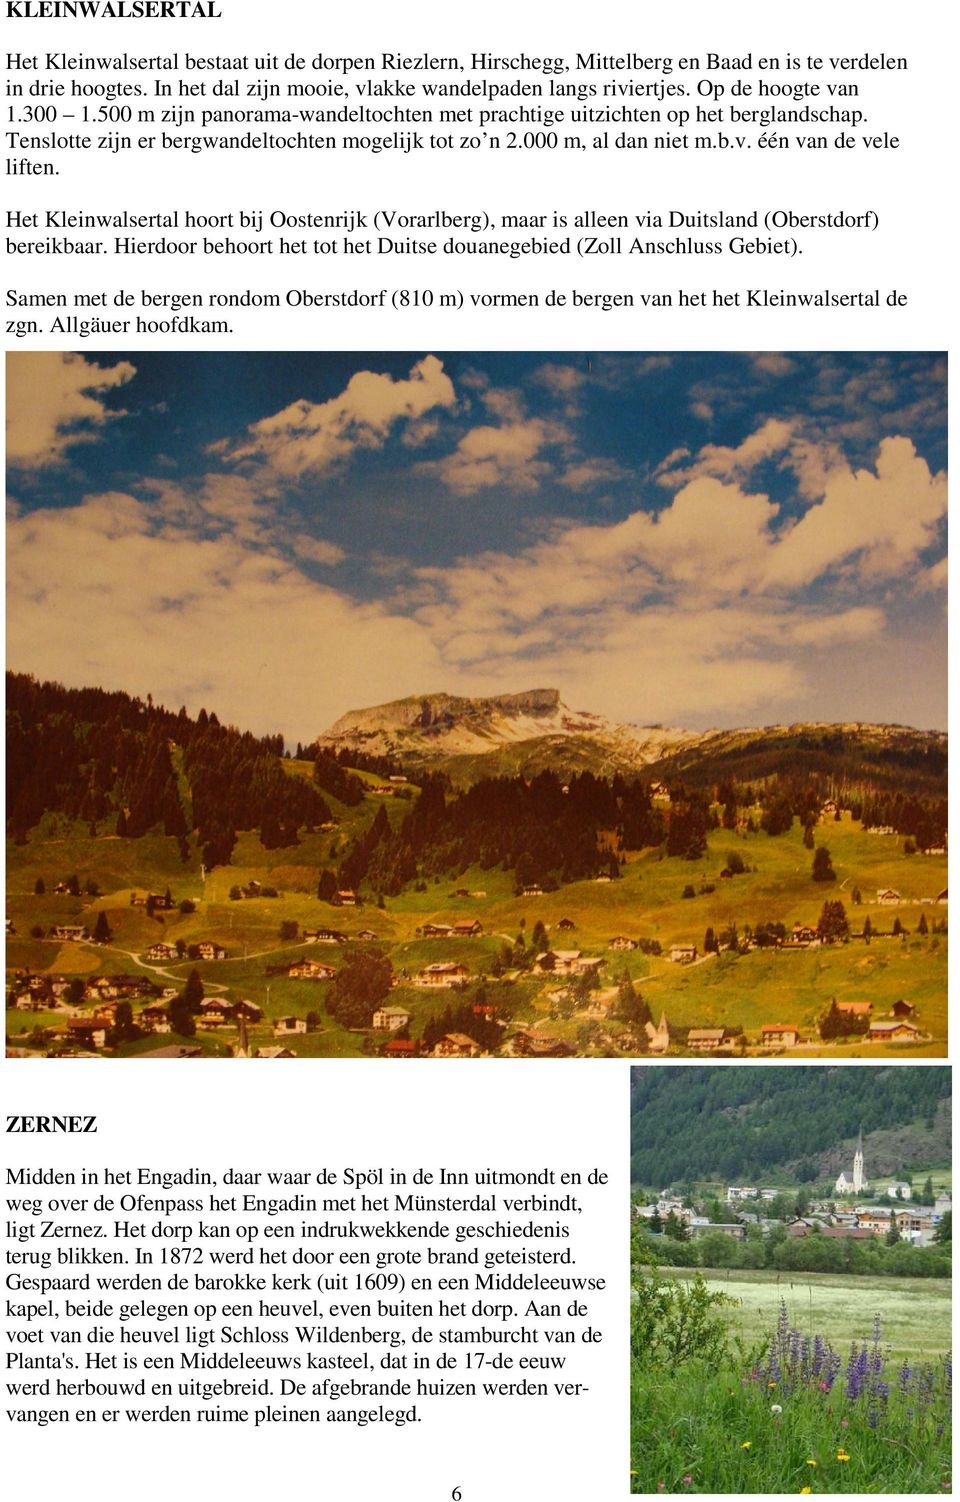 Het Kleinwalsertal hoort bij Oostenrijk (Vorarlberg), maar is alleen via Duitsland (Oberstdorf) bereikbaar. Hierdoor behoort het tot het Duitse douanegebied (Zoll Anschluss Gebiet).